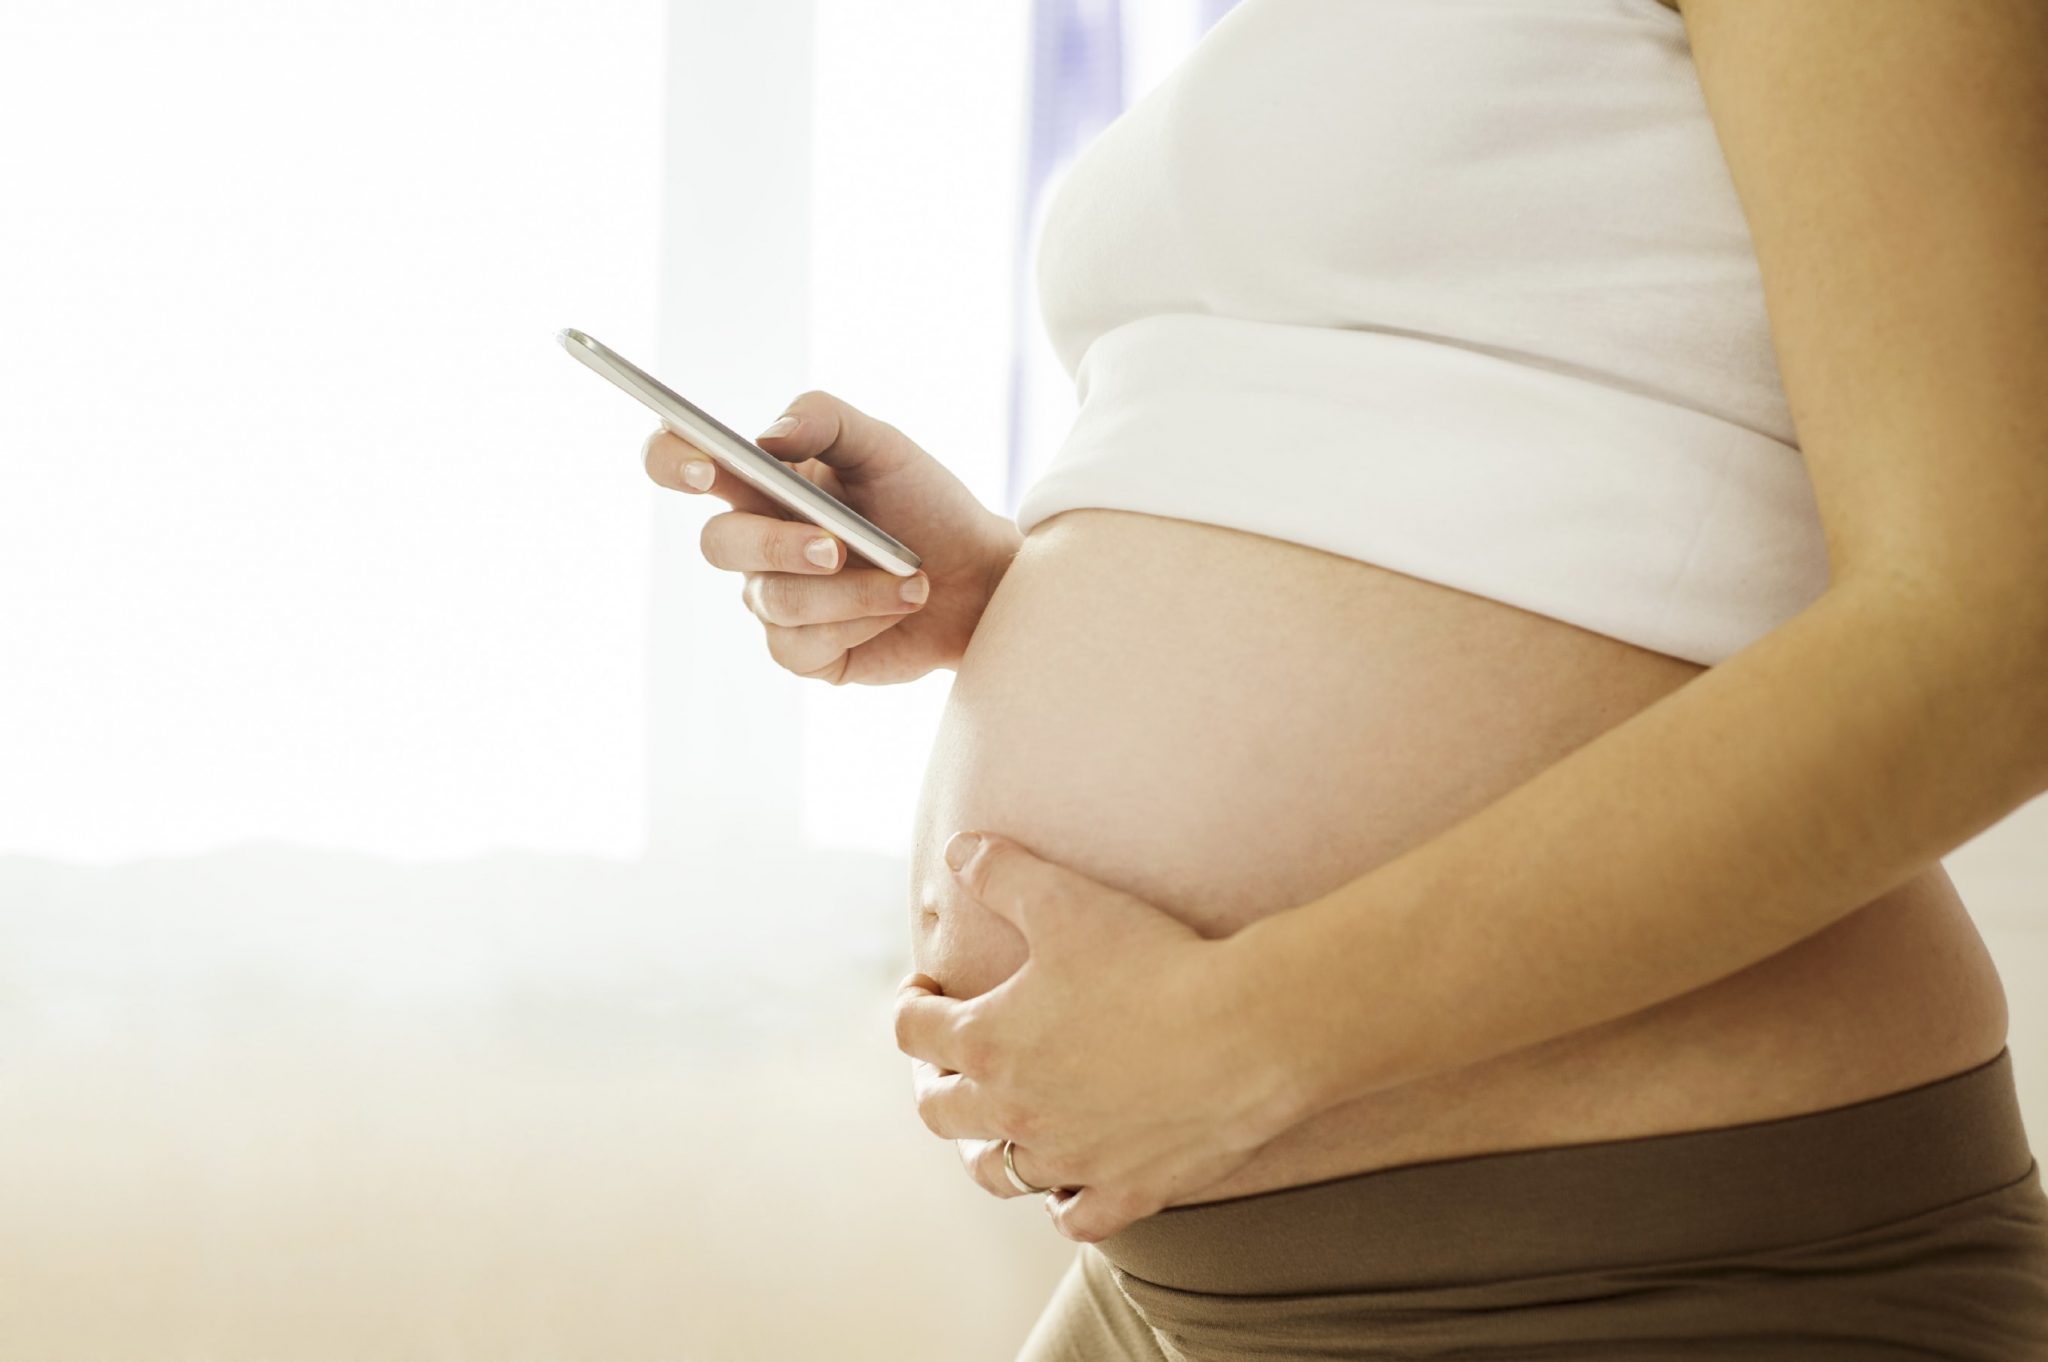 Bästa gravidapparna - Tekniken som hjälper dig genom graviditeten